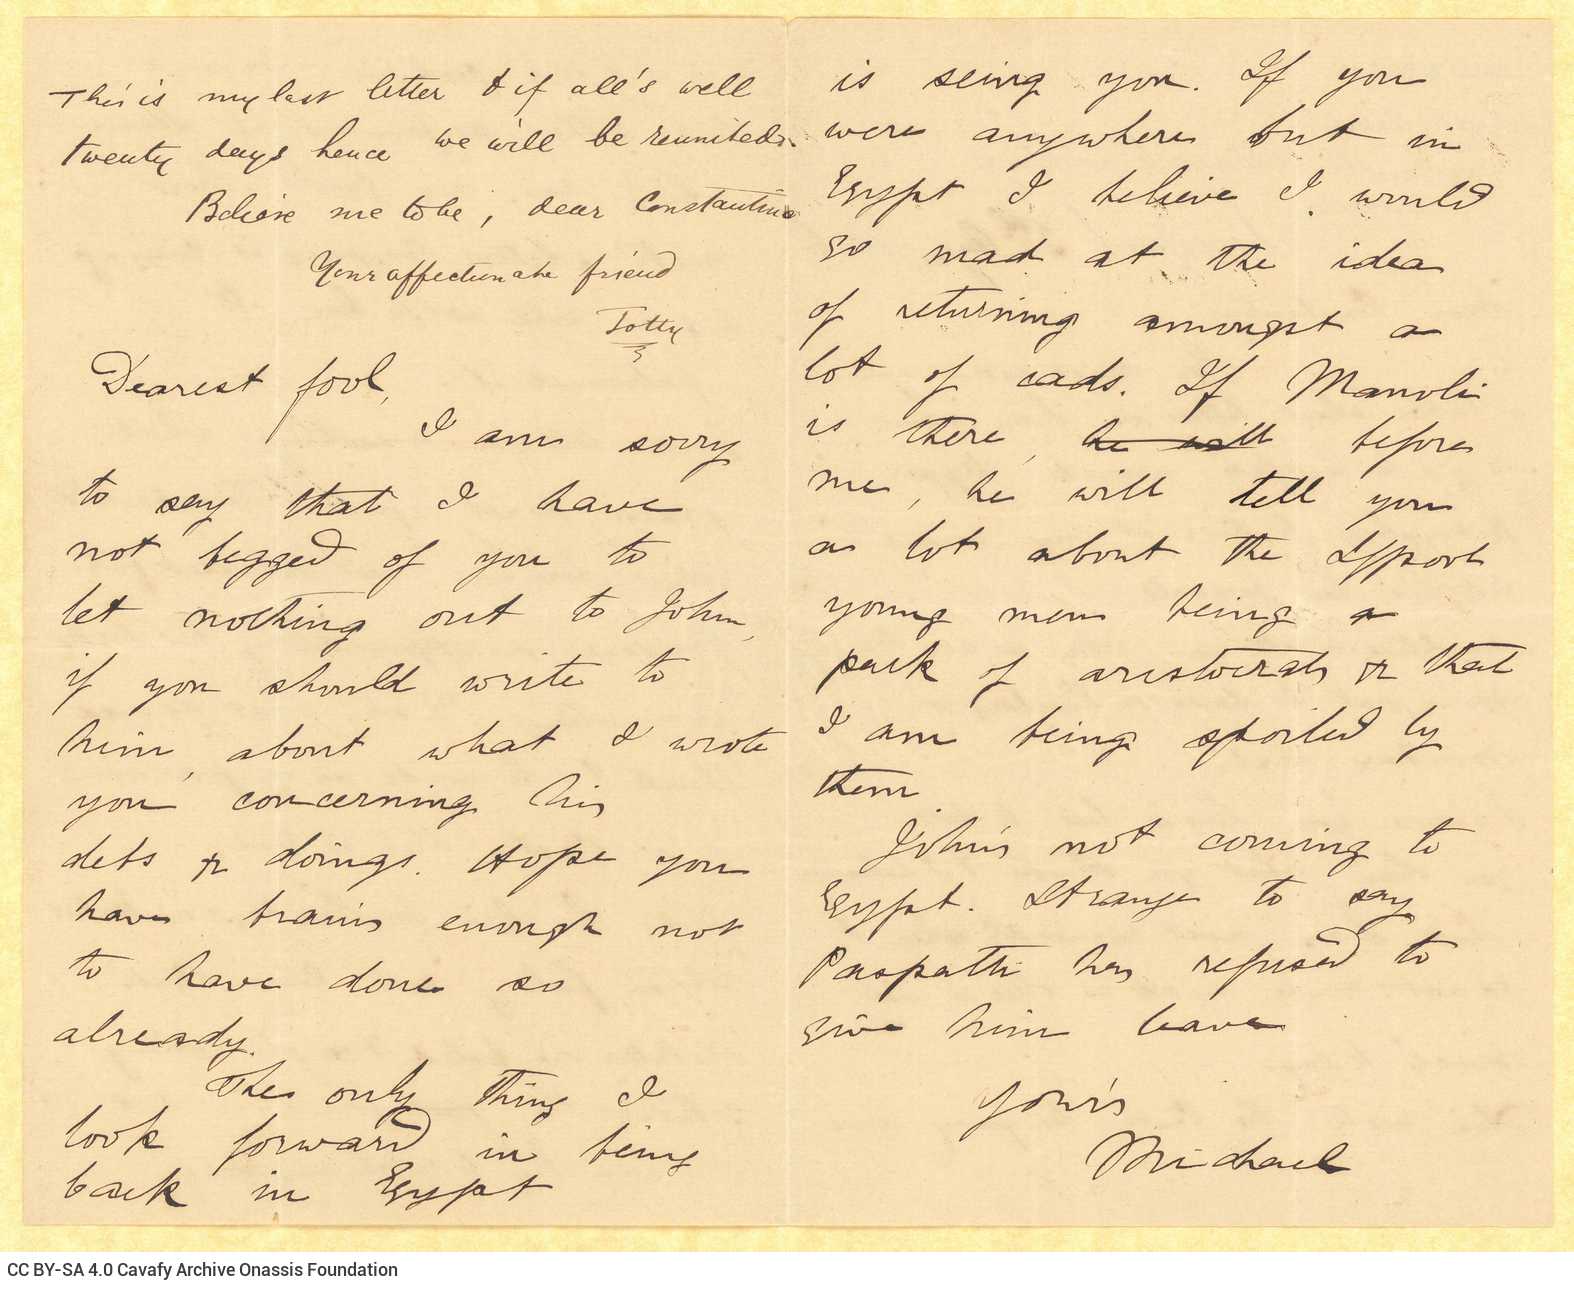 Χειρόγραφη επιστολή των Totty και Μικέ Ράλλη προς τον Καβάφη, σε τετρασ